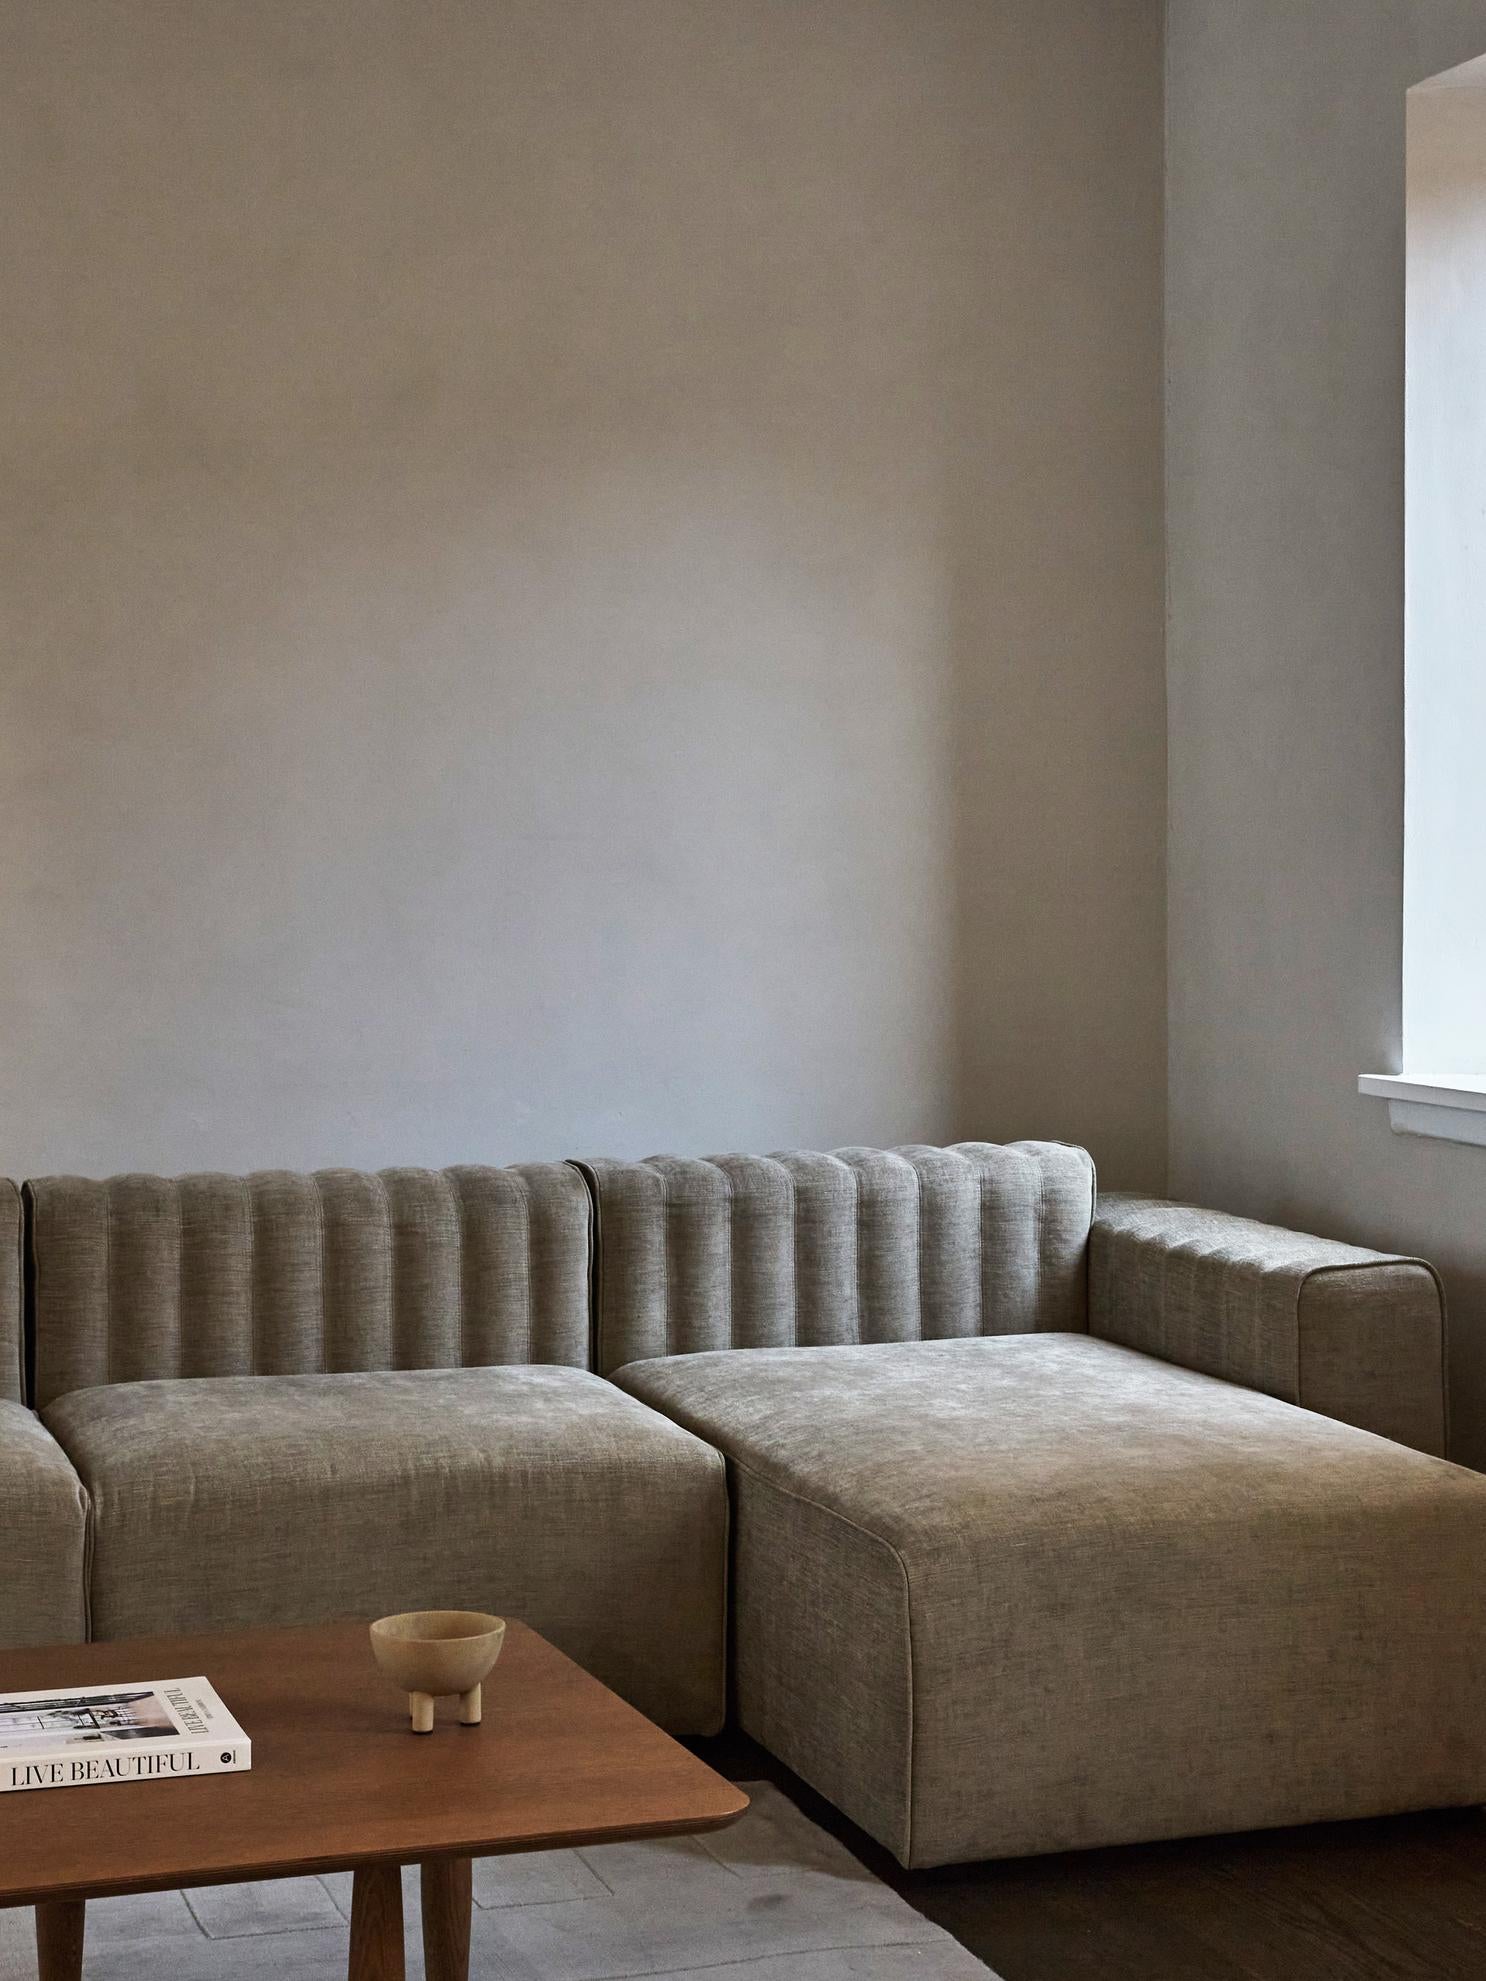 Riff sofa von Kristian Sofus Hansen & Tommy Hyldahl für Nor11

Aufbau präsentiert: ( 1 x rechter Arm / 1 x Mitte / 1 x Chaiselongue):
Abmessungen: B. 290 cm / T. 152 cm / H. 70 cm / Sitzfläche H. 40,5 cm
Stoff: Nina Leinen Fb. 02
 
Modulares Sofa: